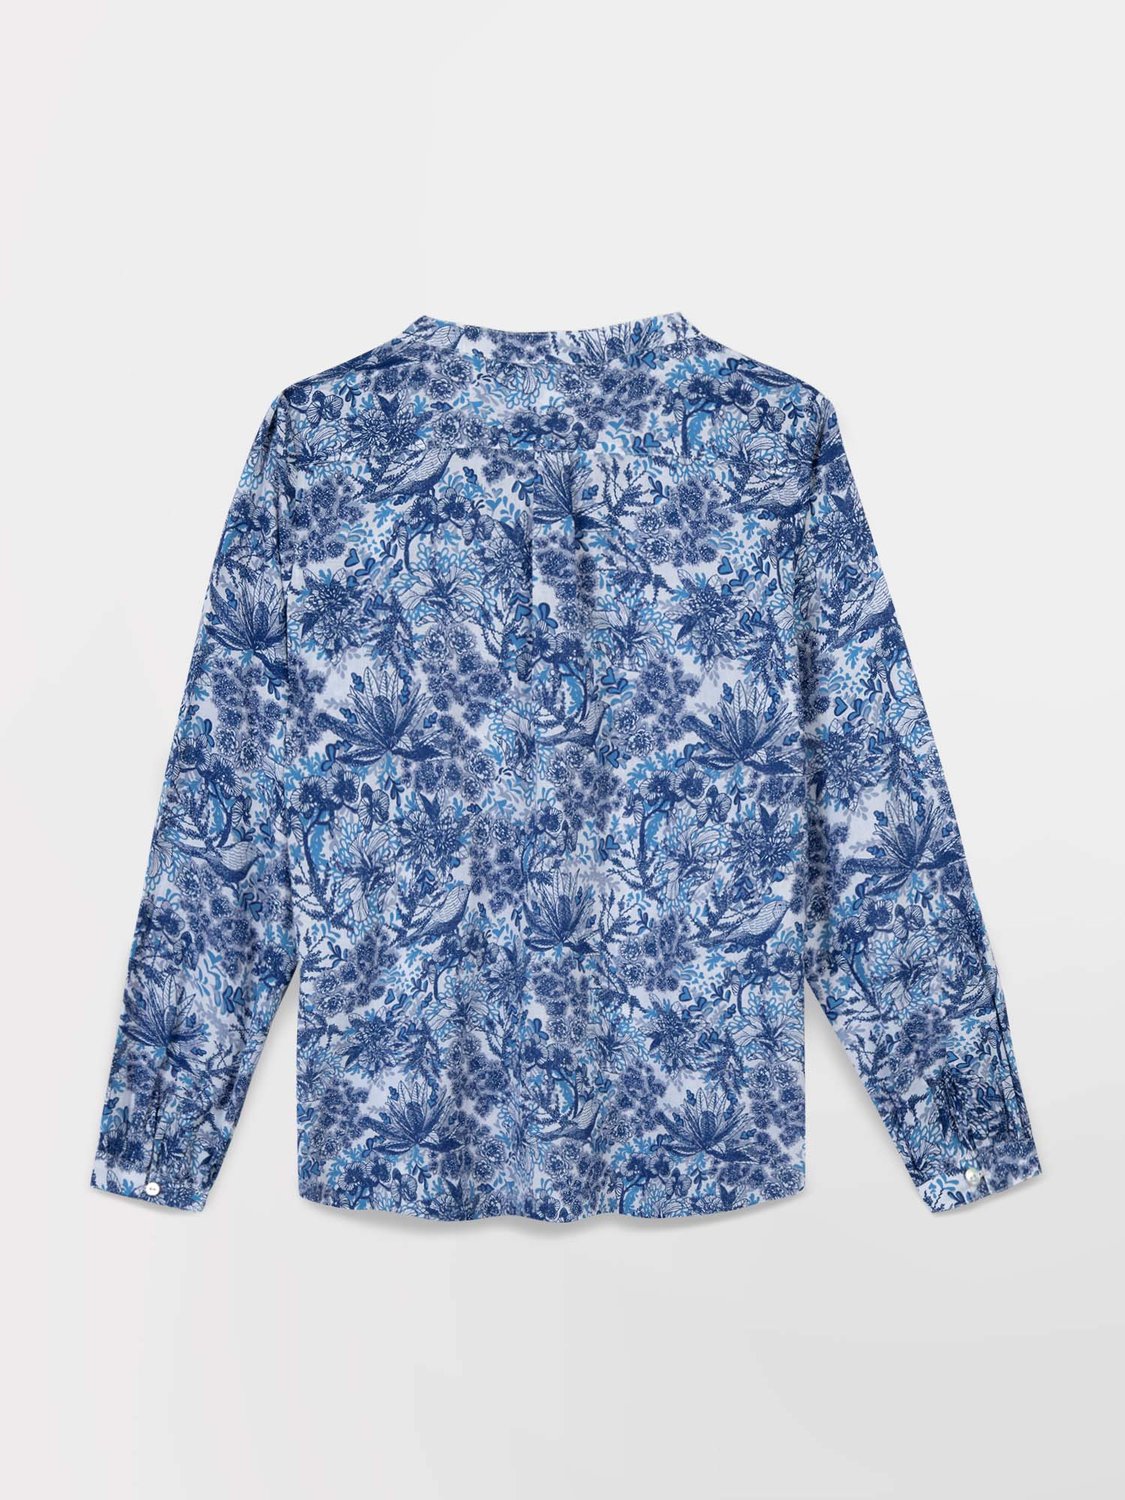 Tunique Femme Toile Coton Motif Floral Bleu